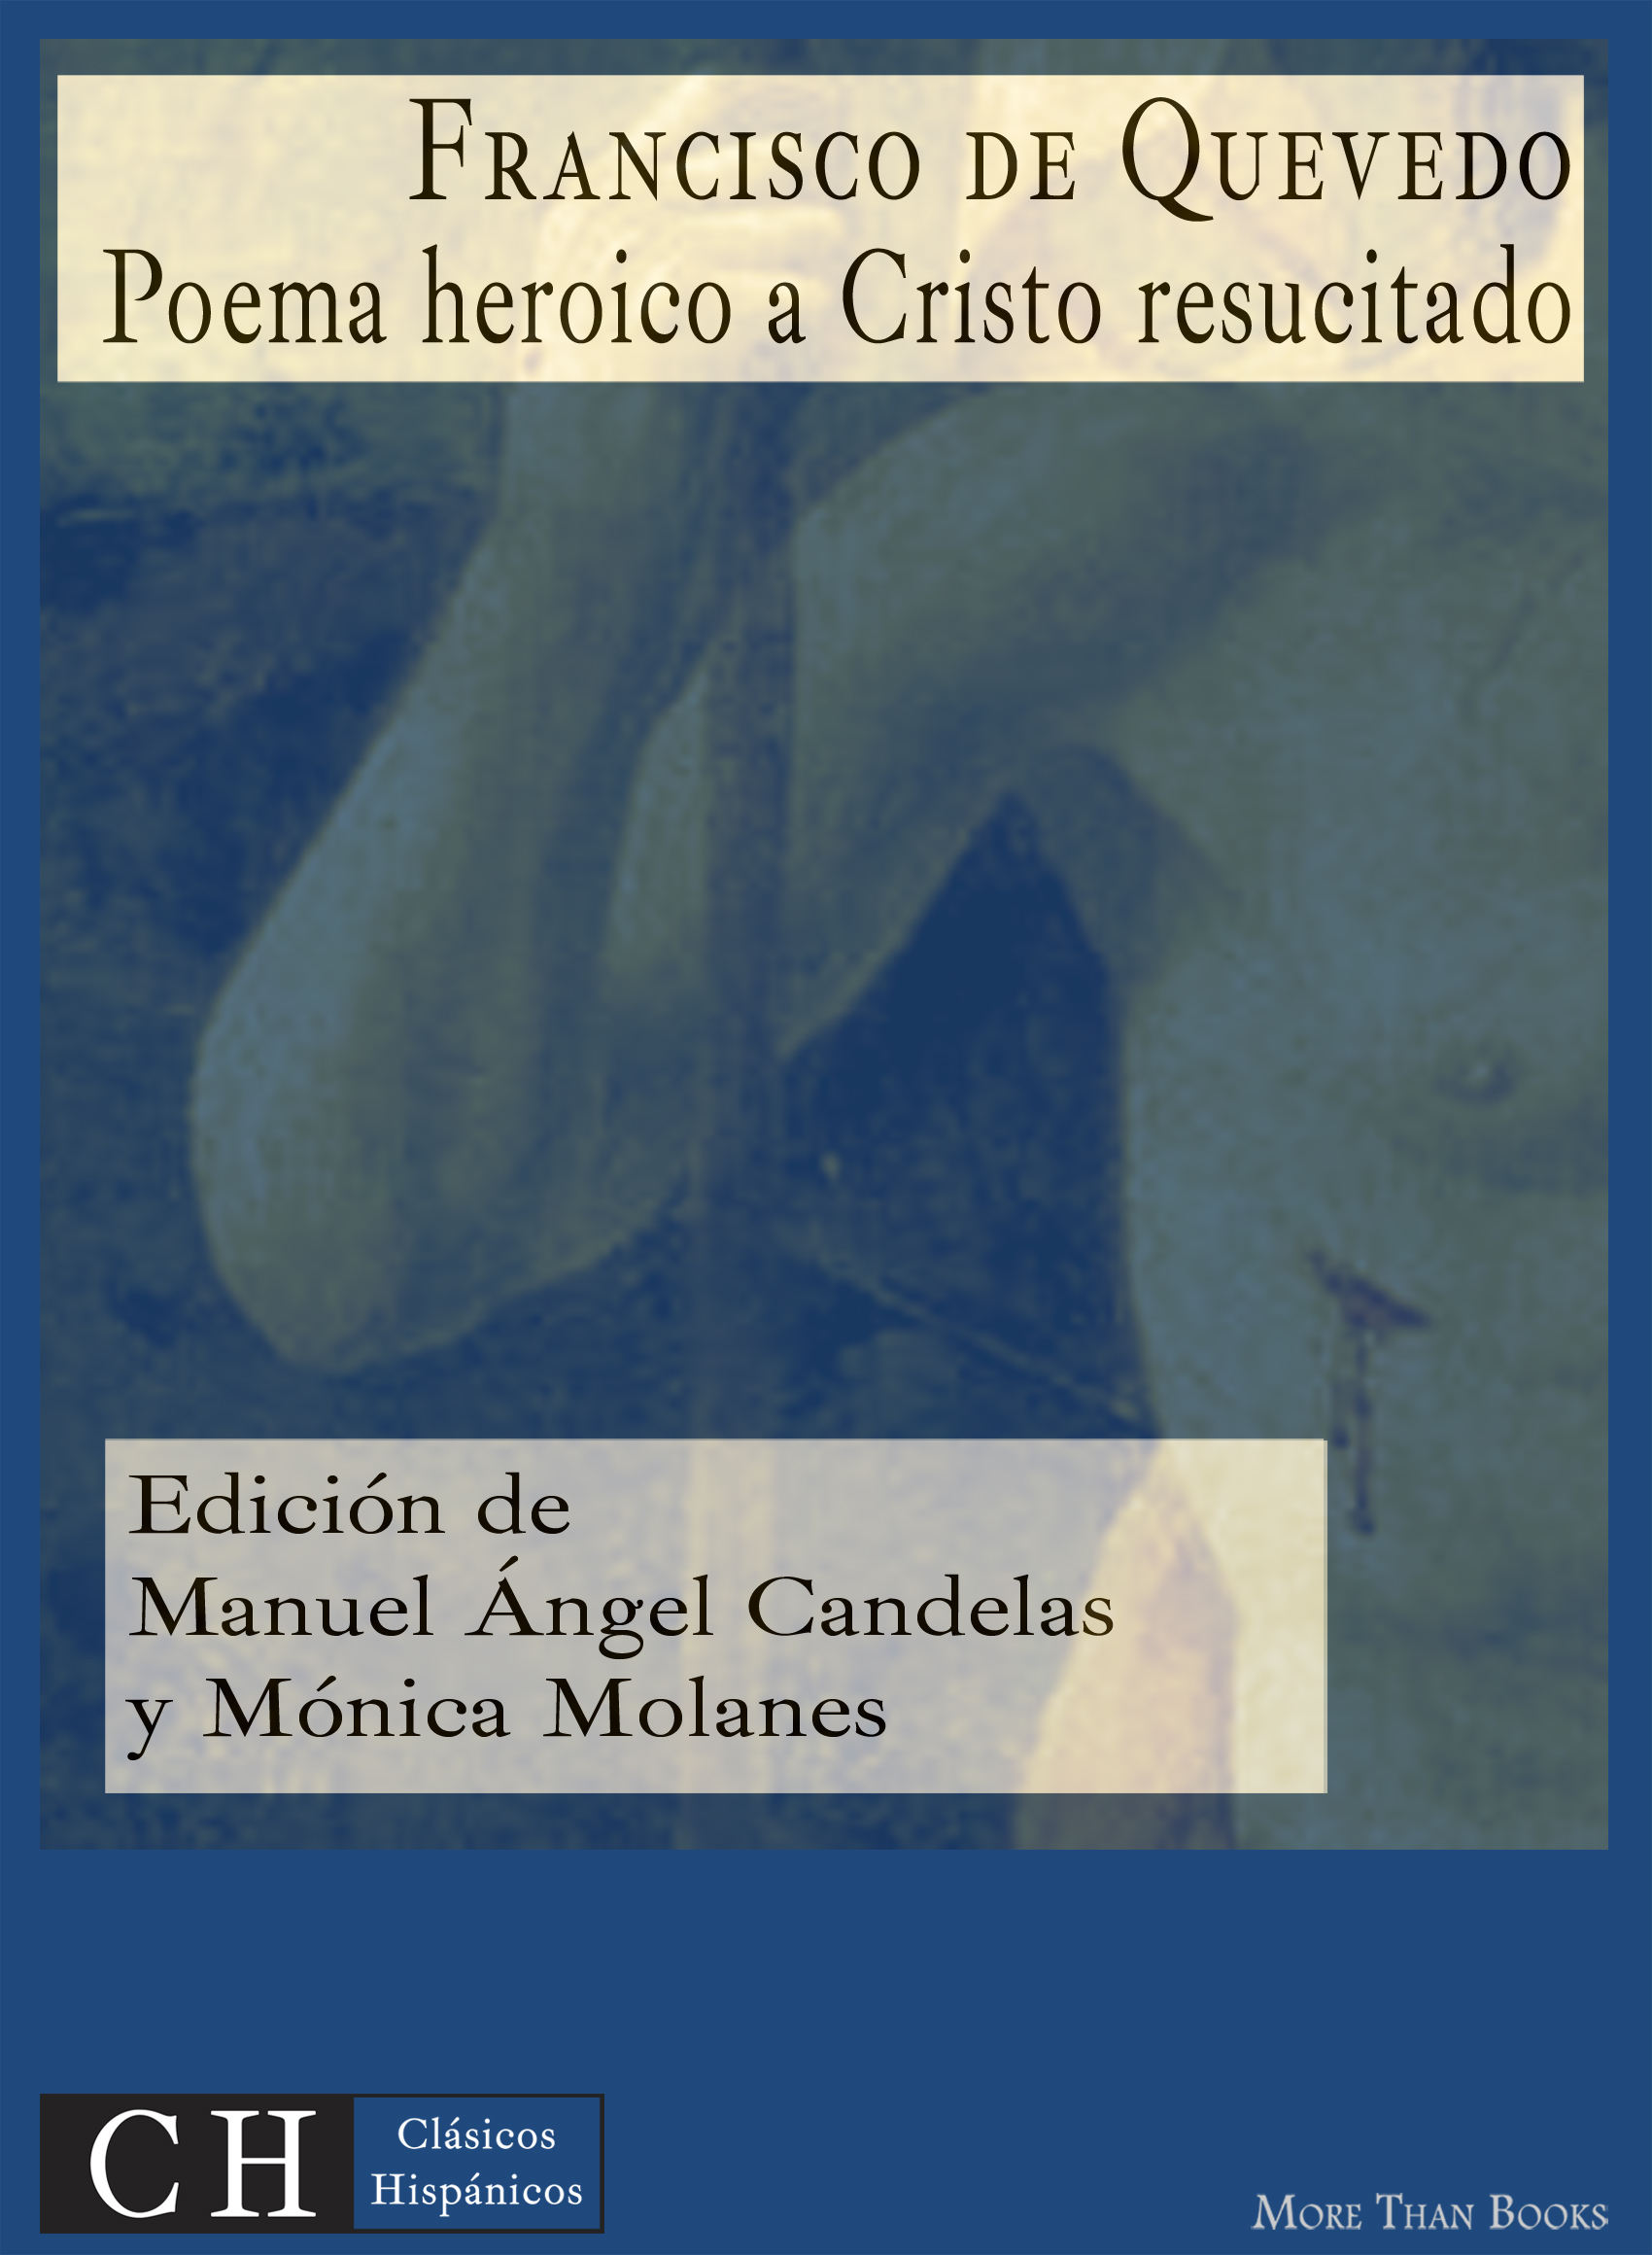 Imagen de portada del libro Poema heroico a Cristo resucitado